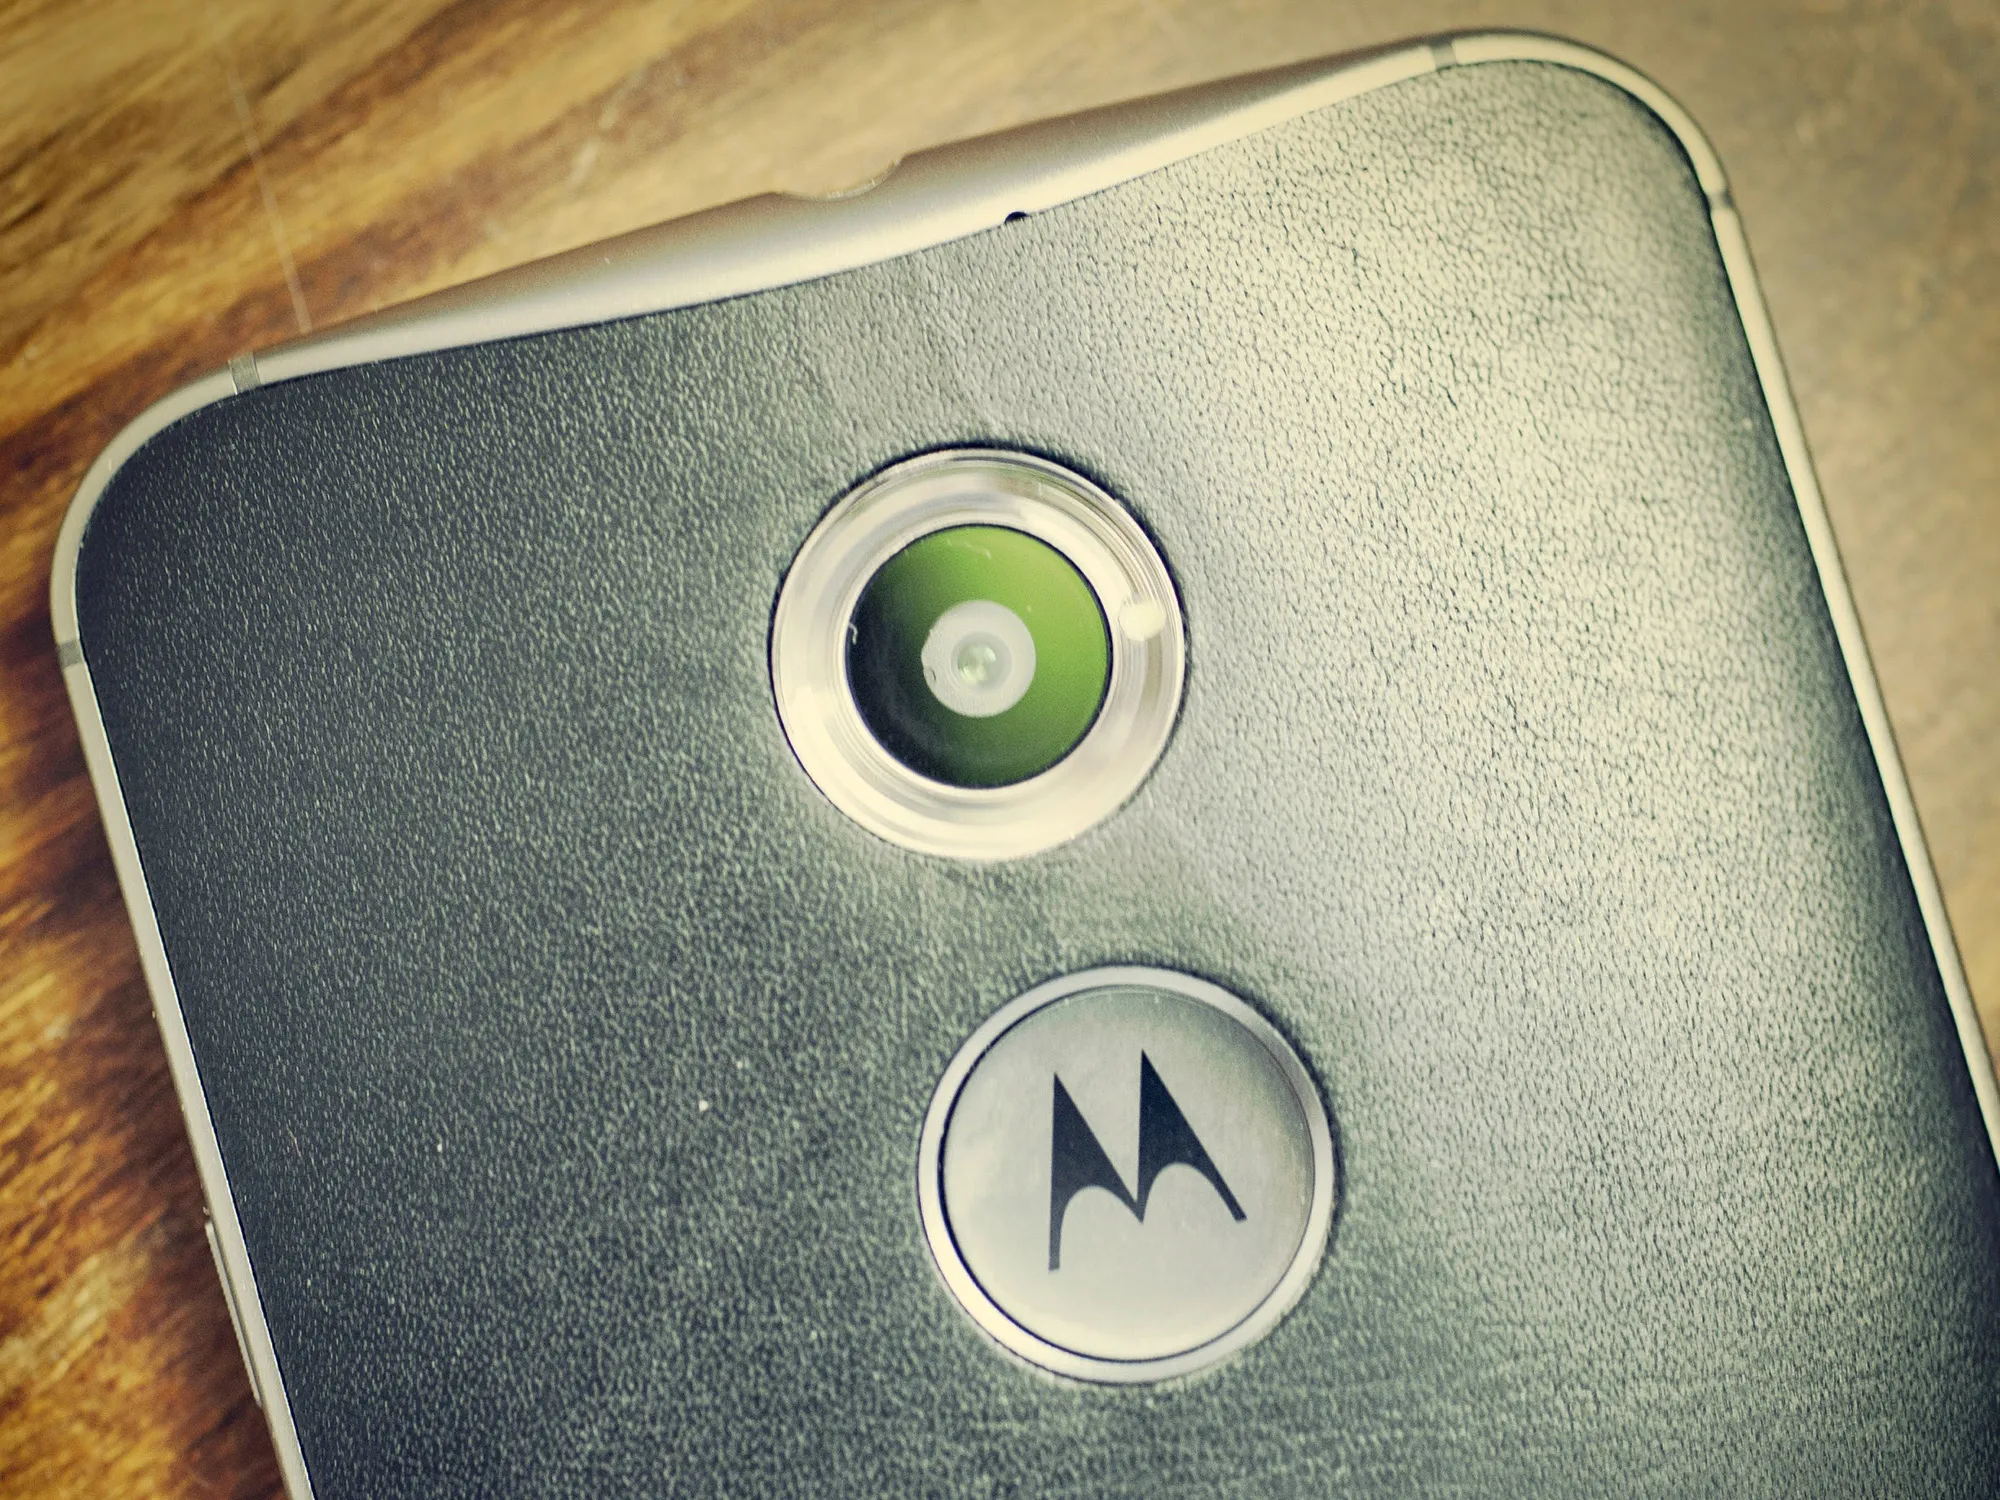 O Motorola Moto X de segunda geração, em 2014.